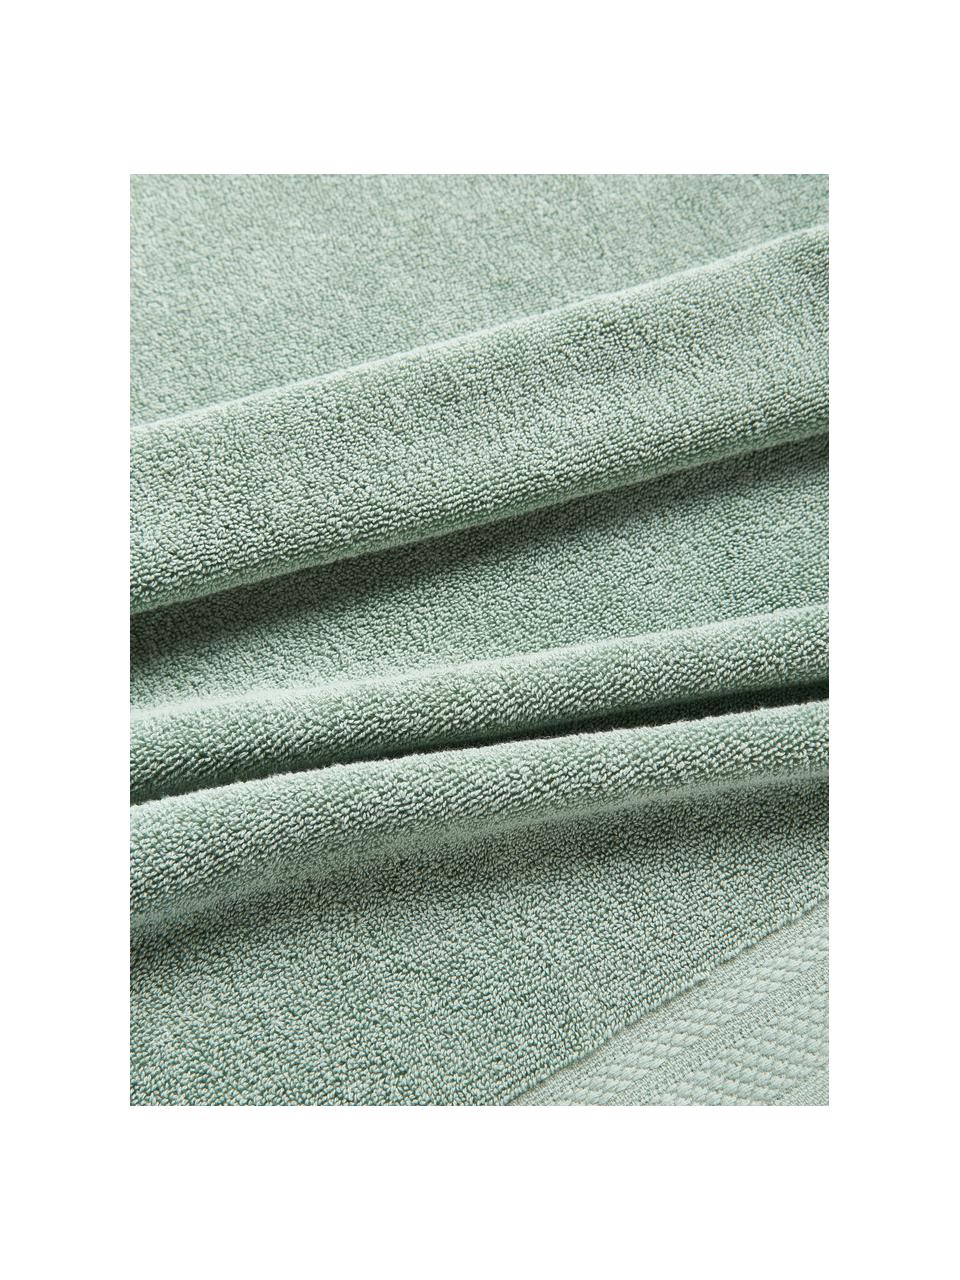 Súprava uterákov z organickej bavlny Premium, rôzne veľkosti, Šalviovozelená, 3-dielna súprava (uterák pre hostí, uterák na ruky, osuška)